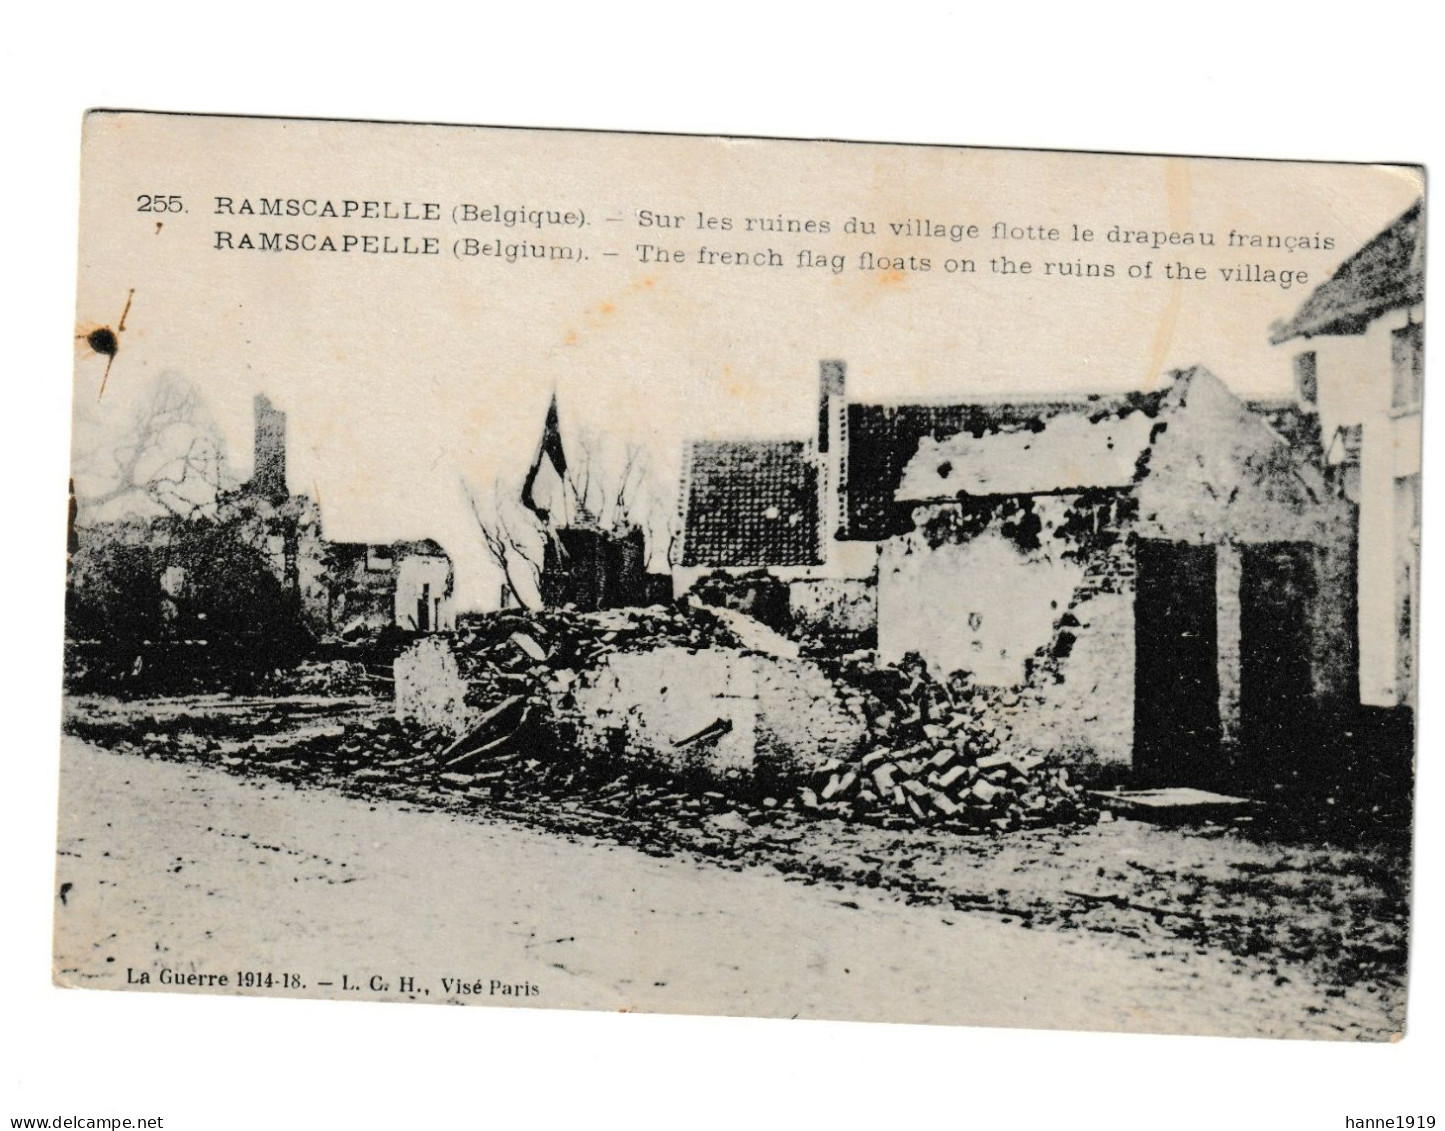 Ramskapelle Sur Les Ruines Du Village Flotte Le Drapeau Français Weltkrieg 1914 Guerre War Htje - Nieuwpoort